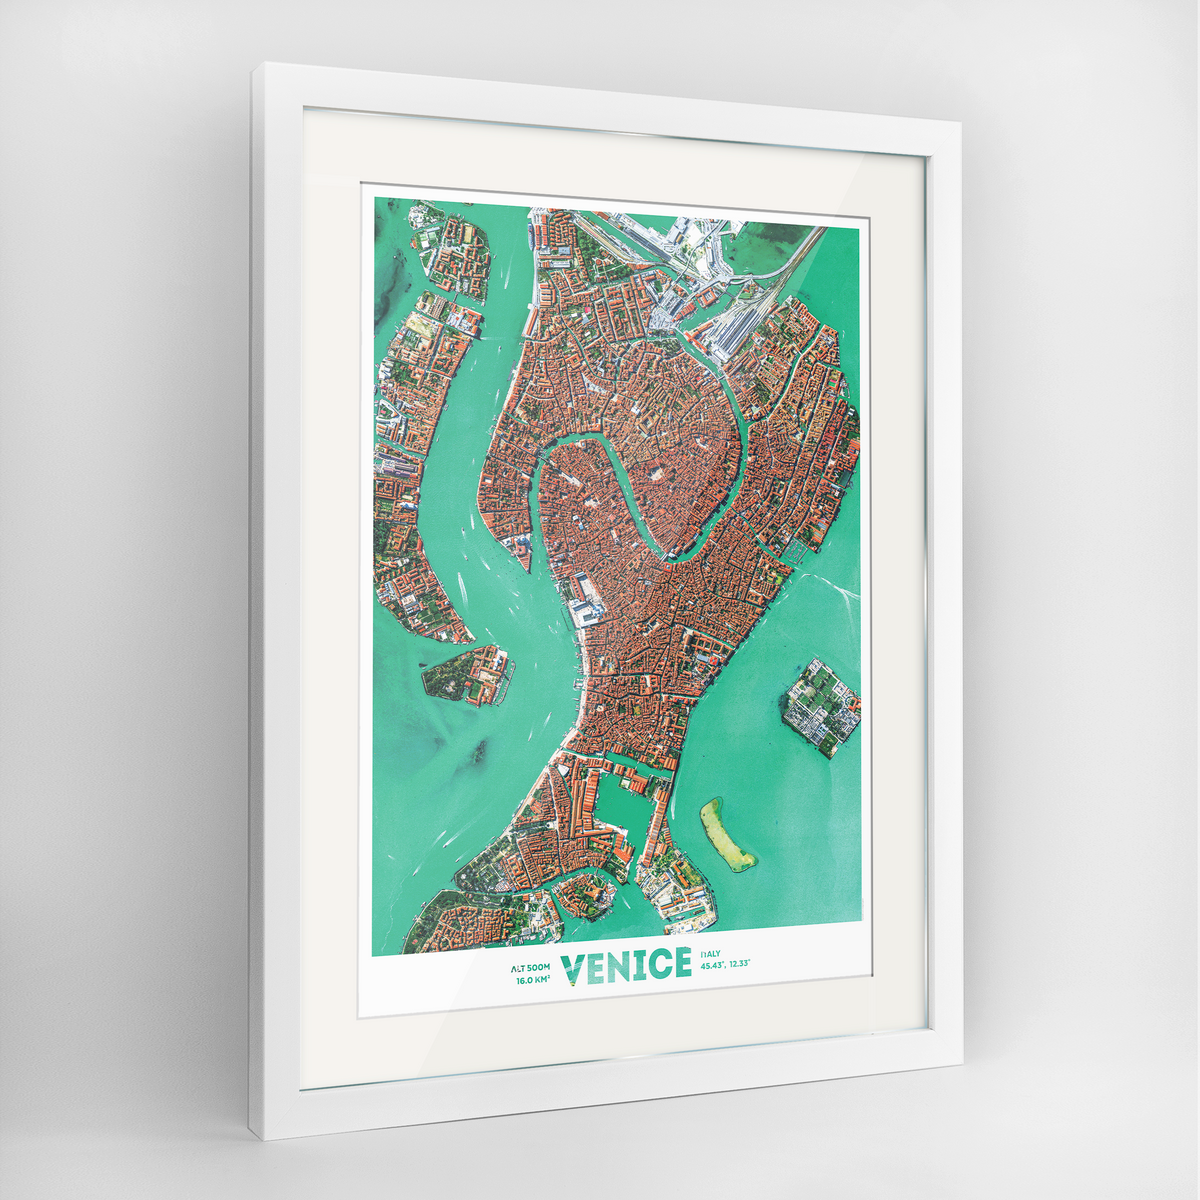 Venice Earth Photography Art Print - Framed